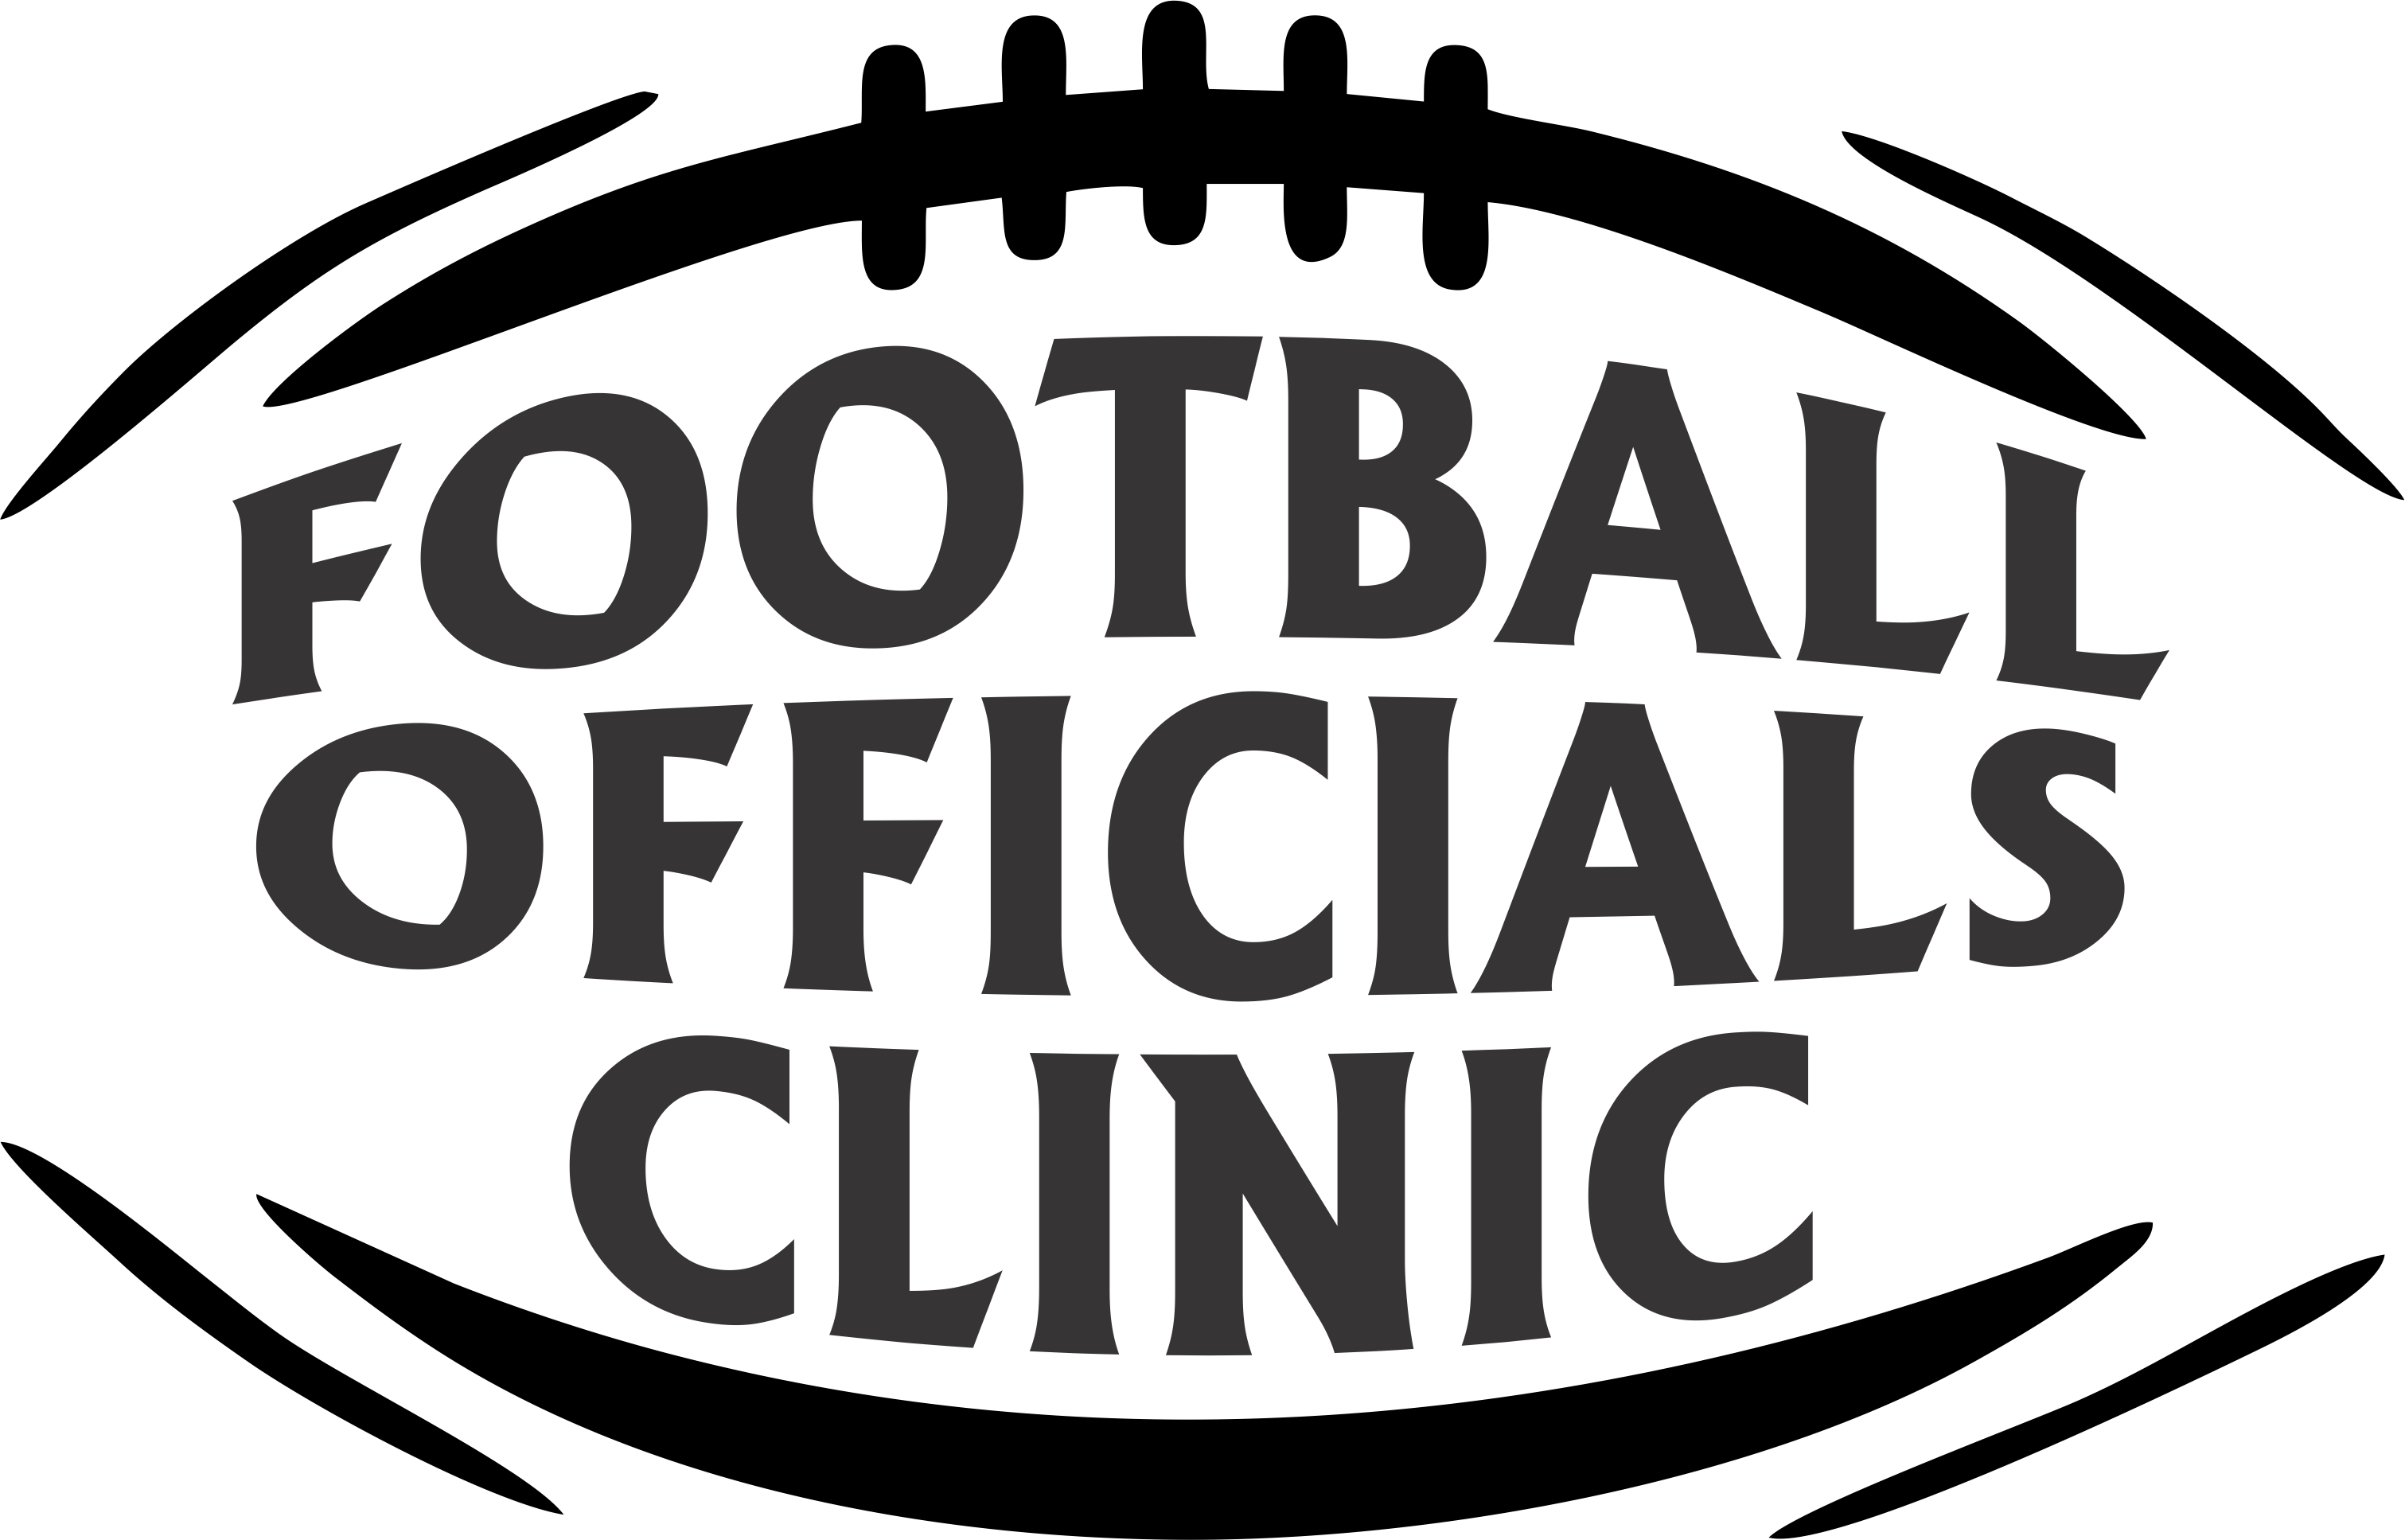 Football Officials Clinic